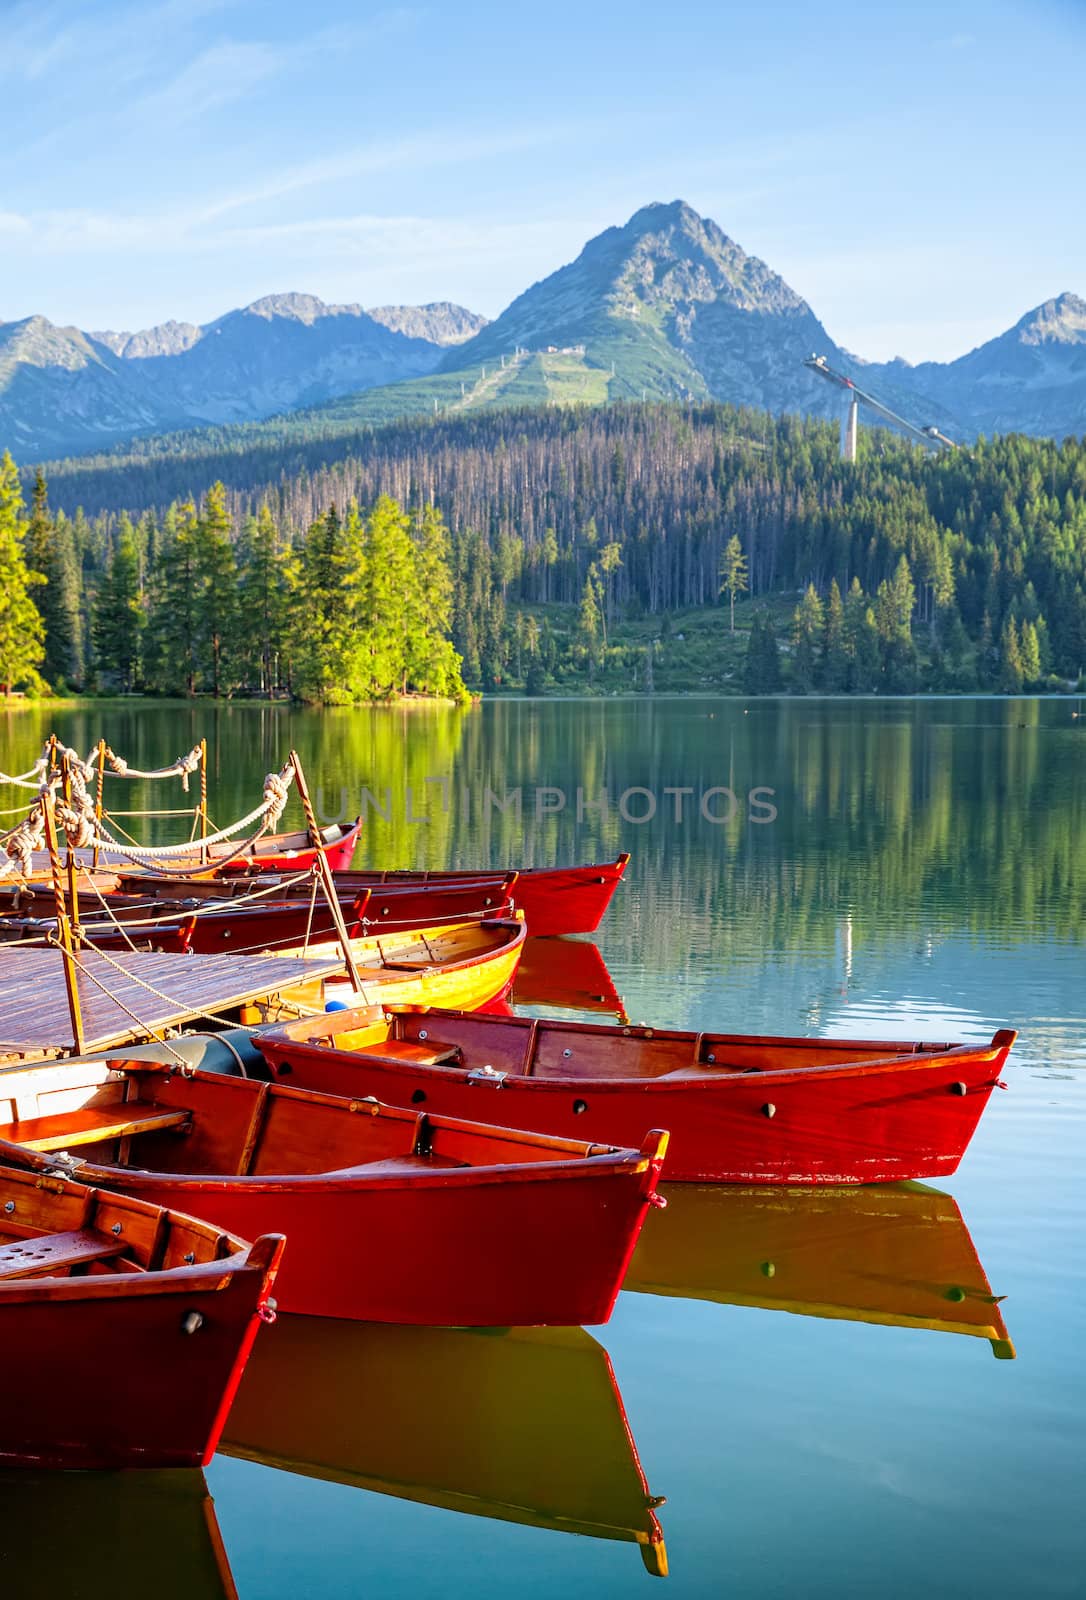 Red boats in mountain lake in High Tatra. Strbske pleso, Slovakia, Europe. Focos on boat